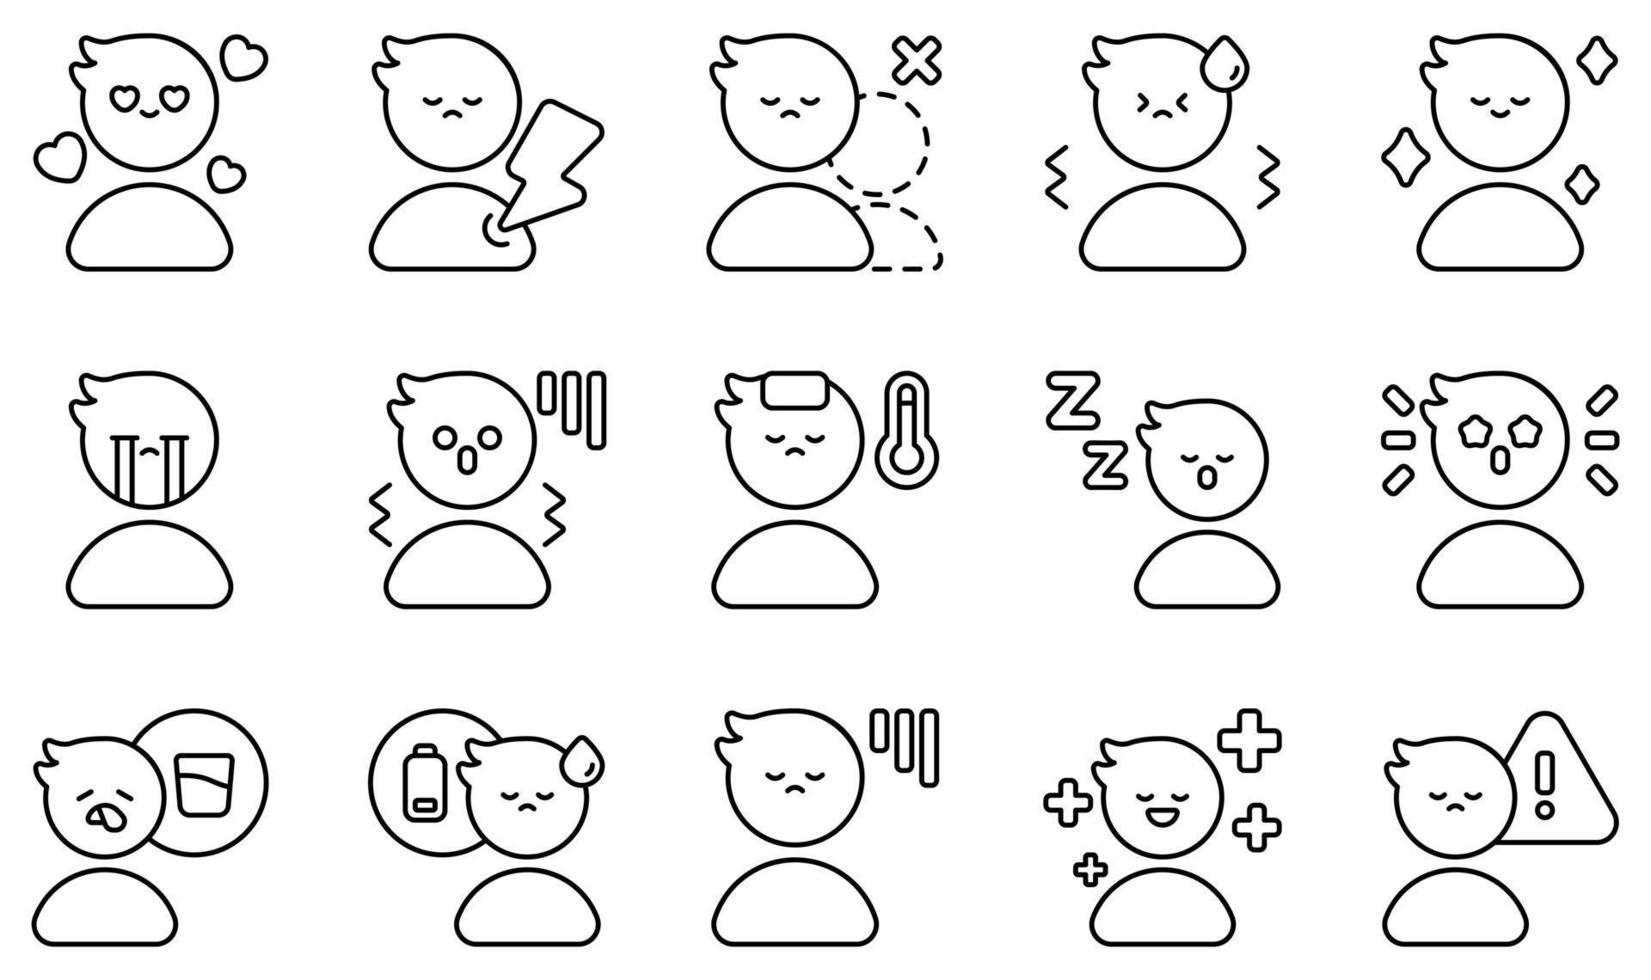 ensemble d'icônes vectorielles liées au sentiment. contient des icônes telles que l'amour, la douleur, la solitude, la nervosité, le soulagement, la tristesse et plus encore. vecteur